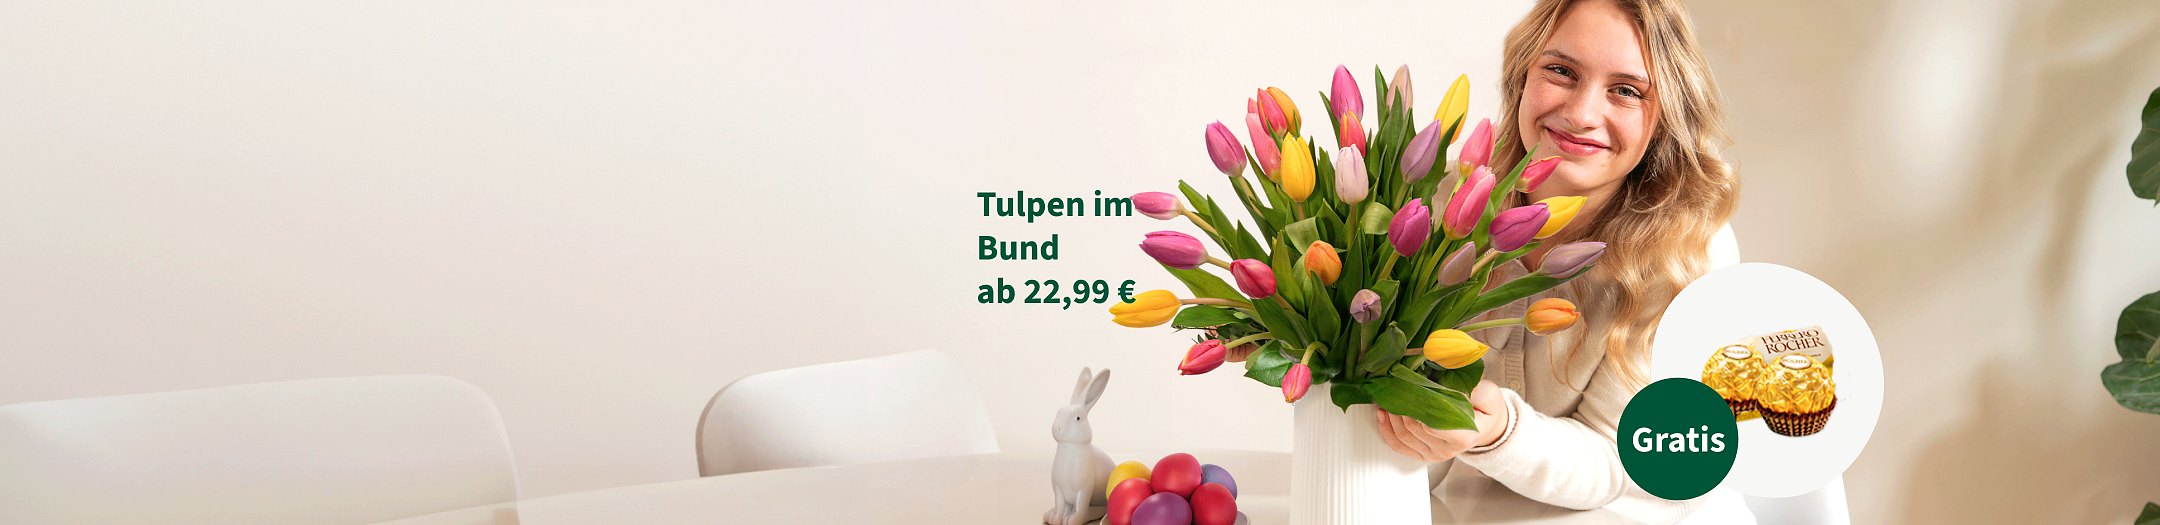 Tulpen im Bund ab 22,99 €